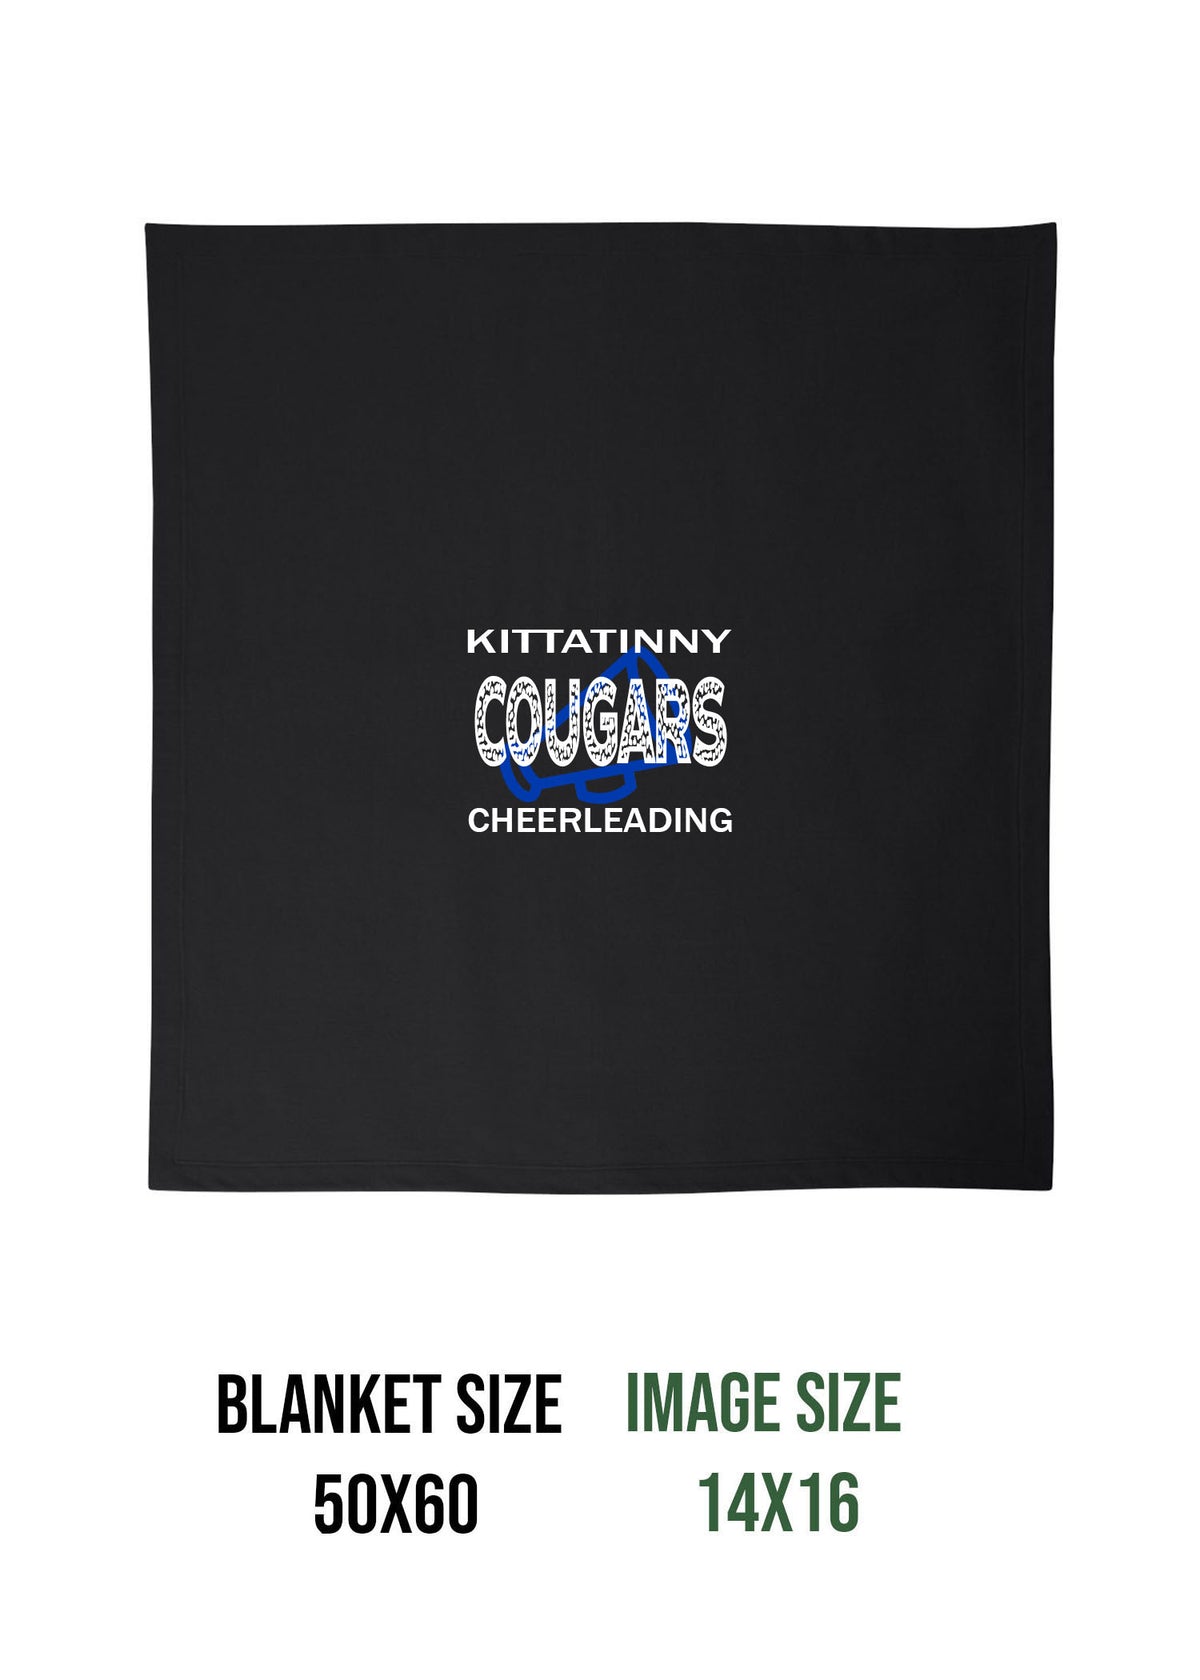 Kittatinny Cheer Design 10 Blanket